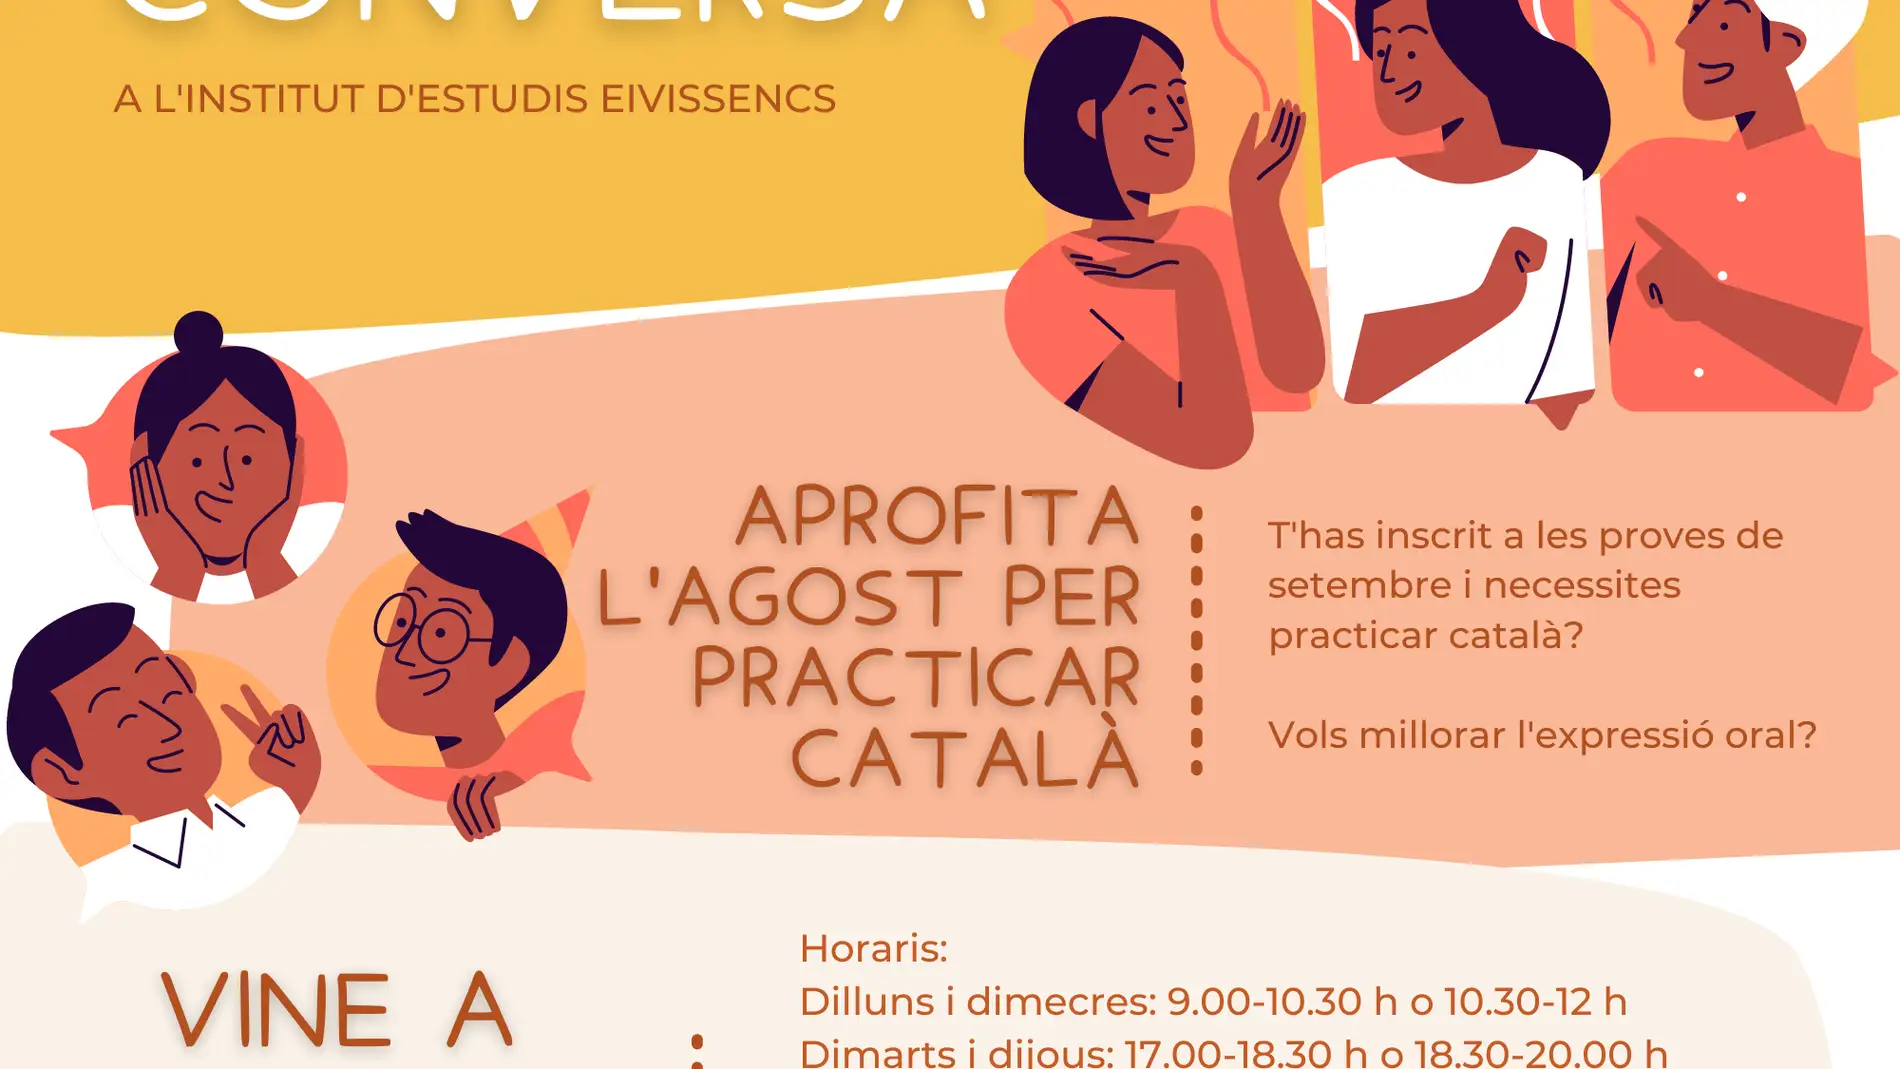 El Institut d'Estudis Eivissencs organiza en agosto sus talleres de conversación en catalán para adultos